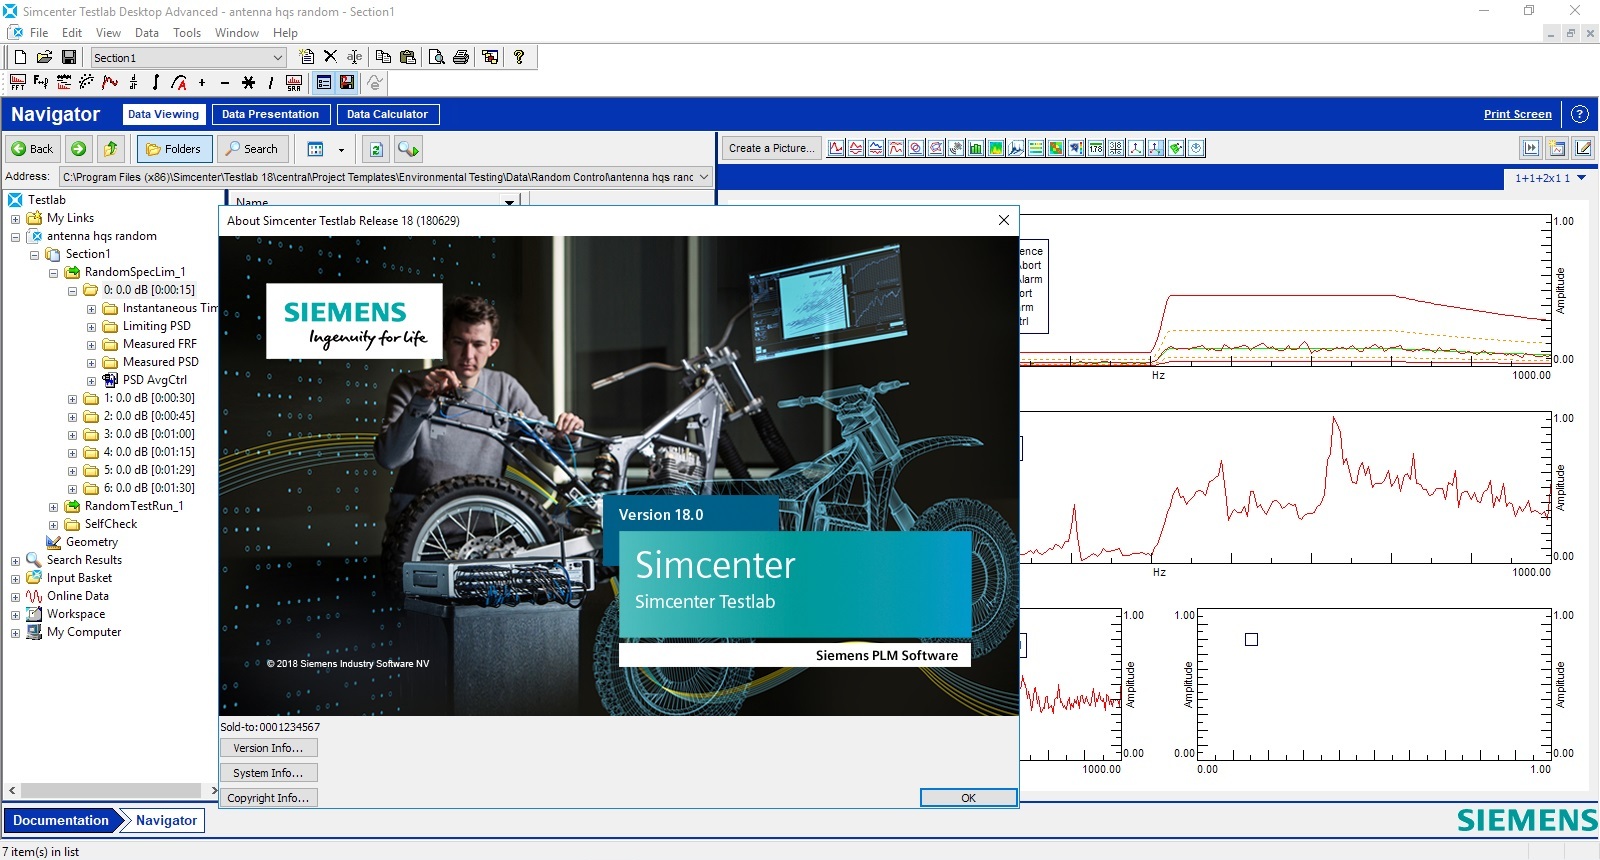 Working with Siemens Simcenter Testlab (ex LMS Test.Lab) 18.0 full